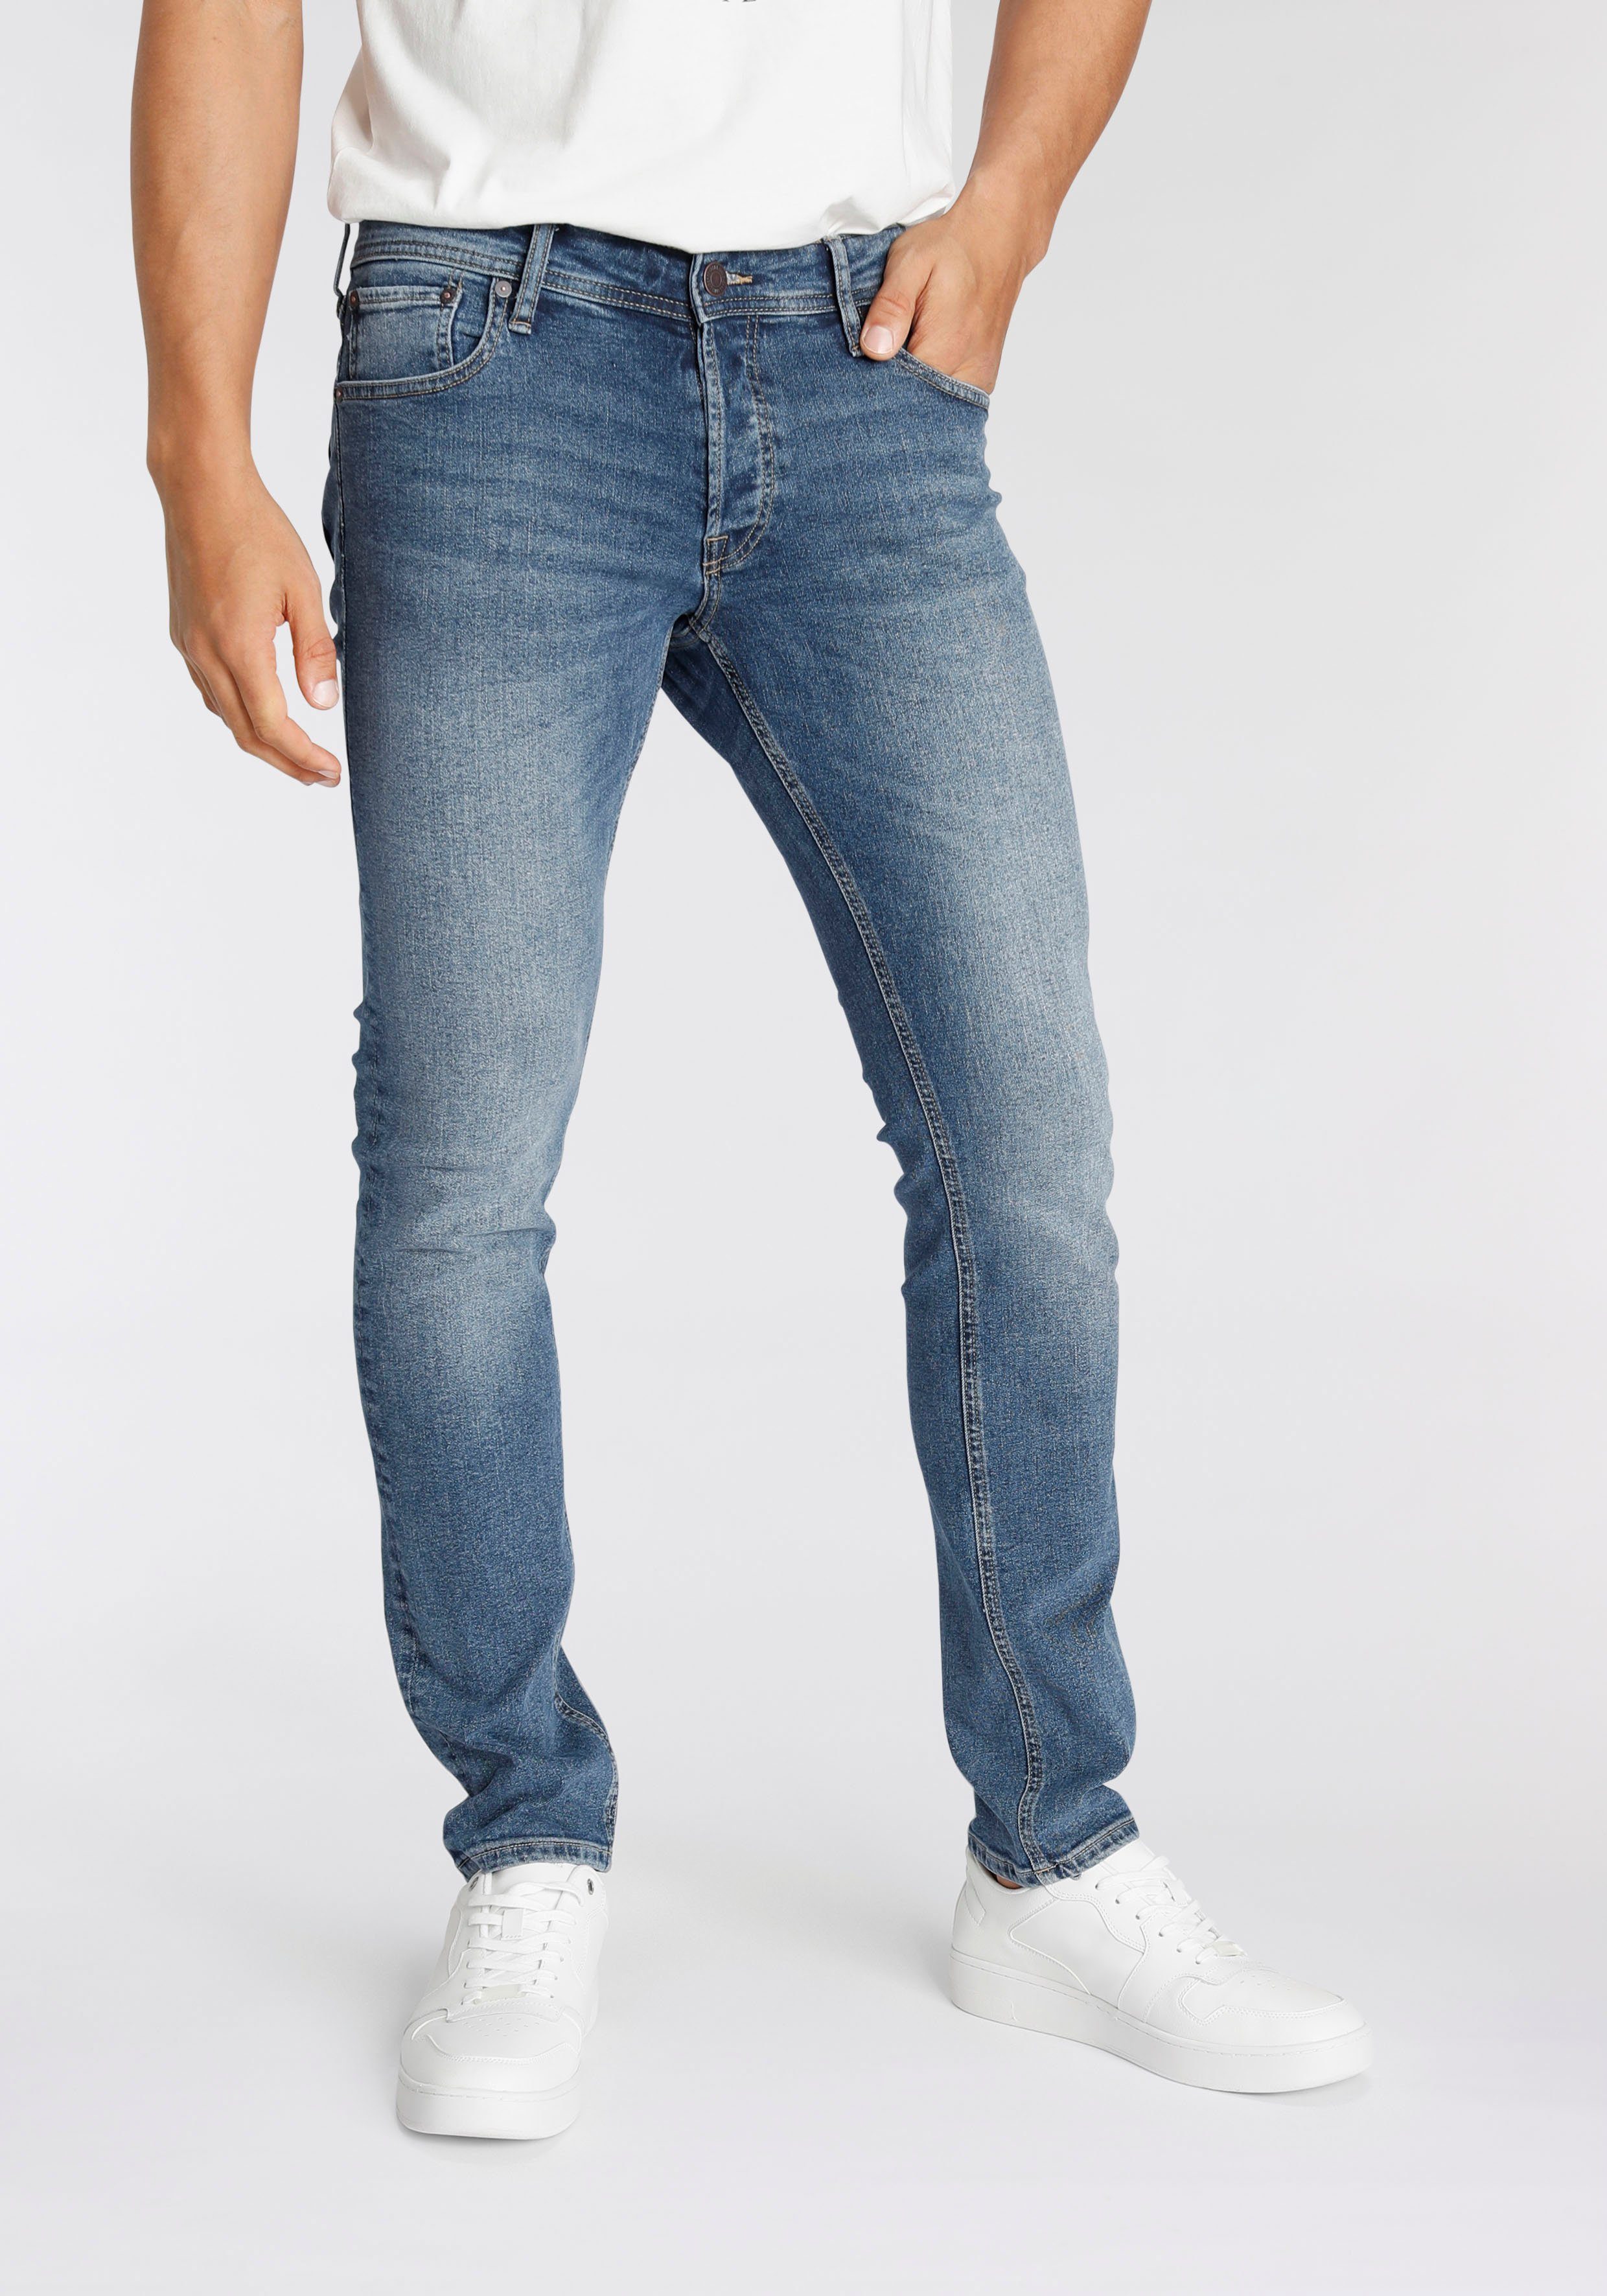 Blaue Herren-Jeans online kaufen | OTTO